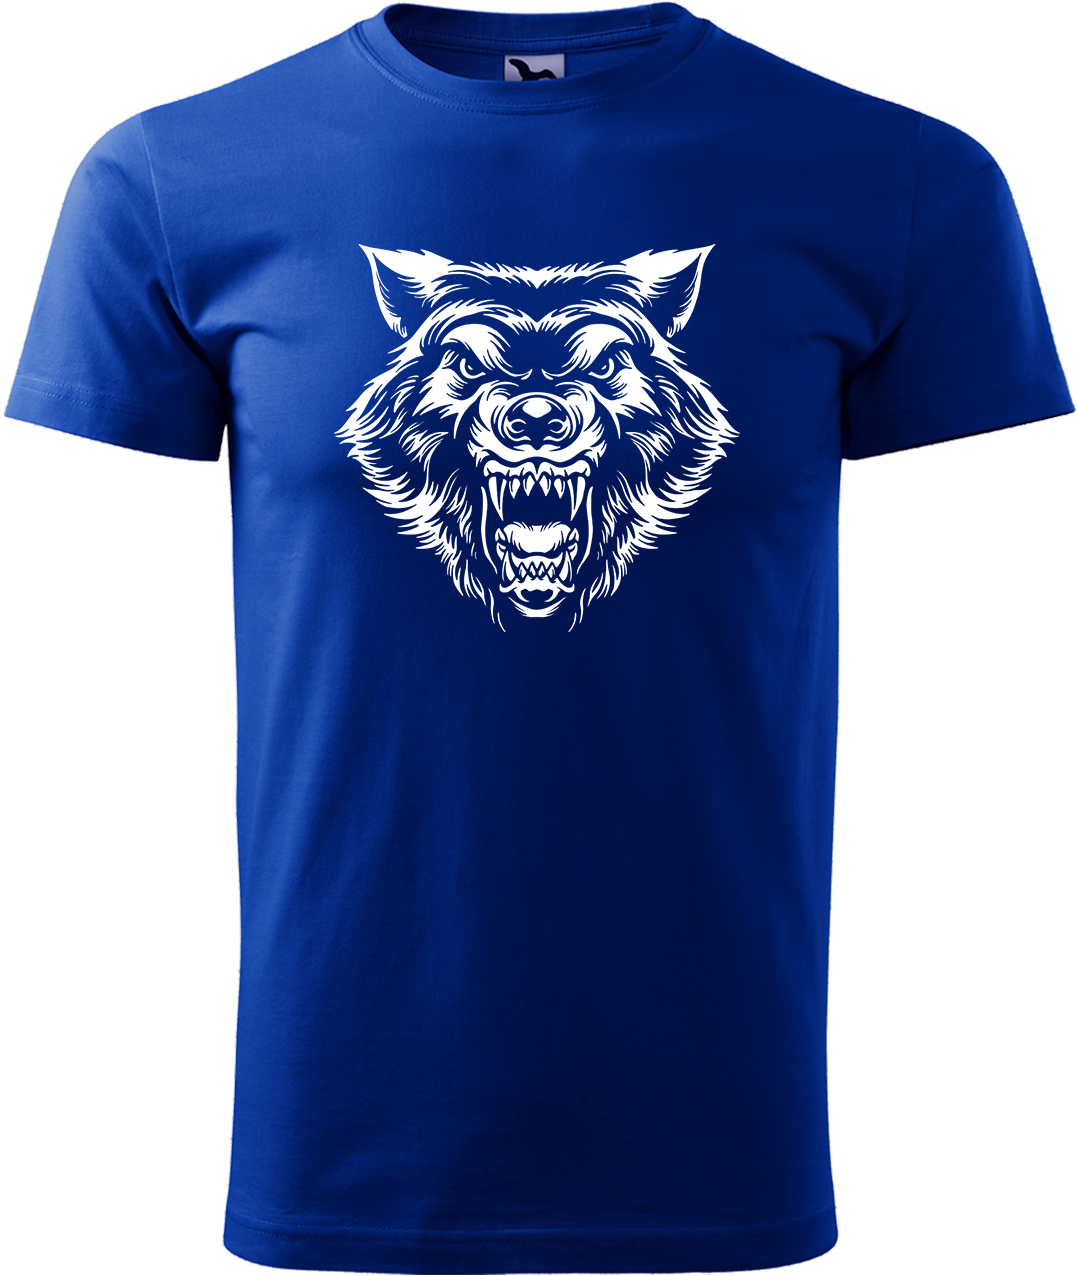 Pánské tričko s vlkem - Rozzuřený vlk Velikost: XL, Barva: Královská modrá (05), Střih: pánský